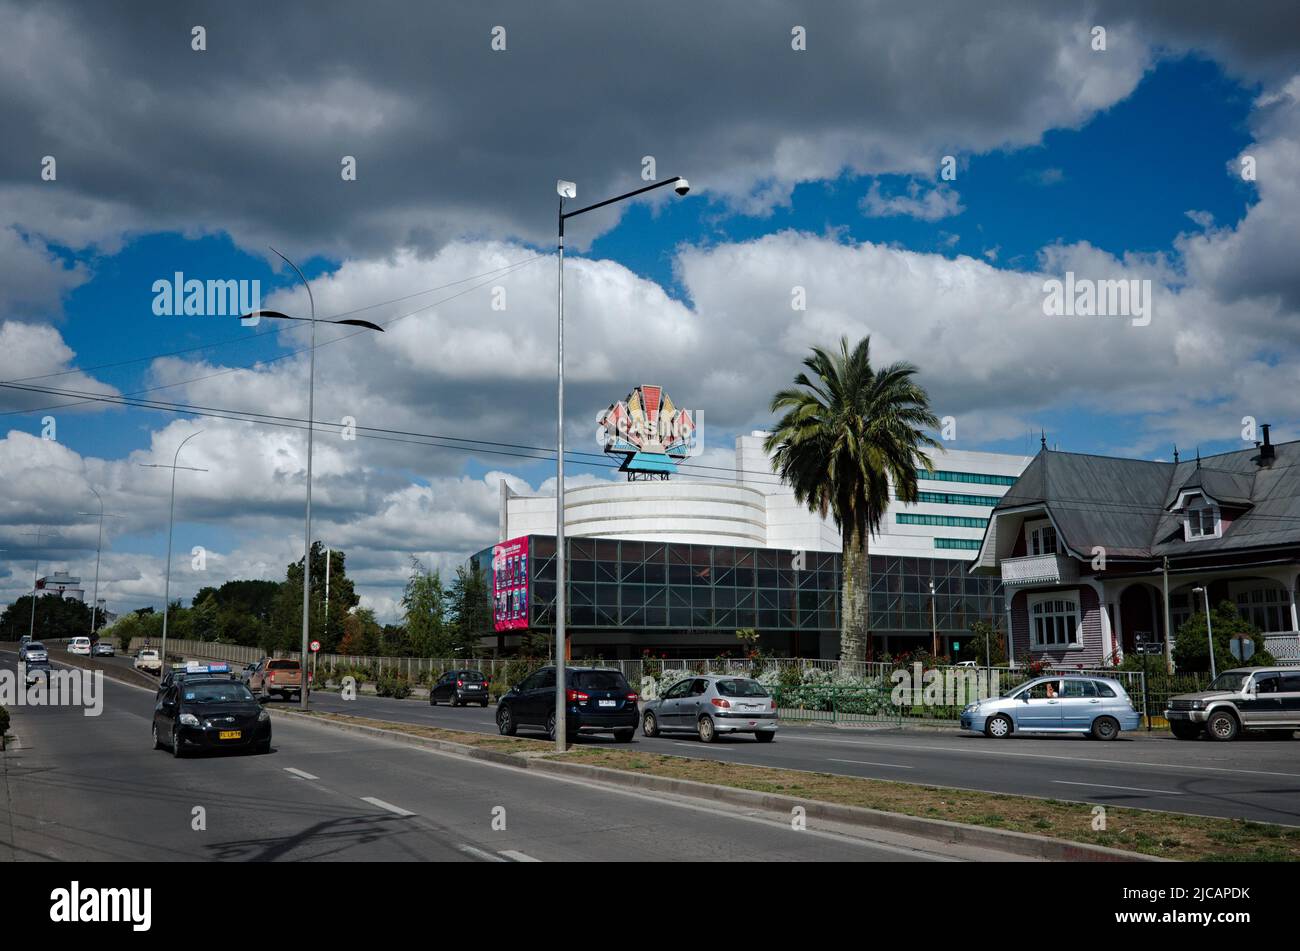 Osorno, Chile - February, 2020: Highway, casino and palm tree. View of Casino Marina del Sol Osorno and Avenida Republica street. Stock Photo